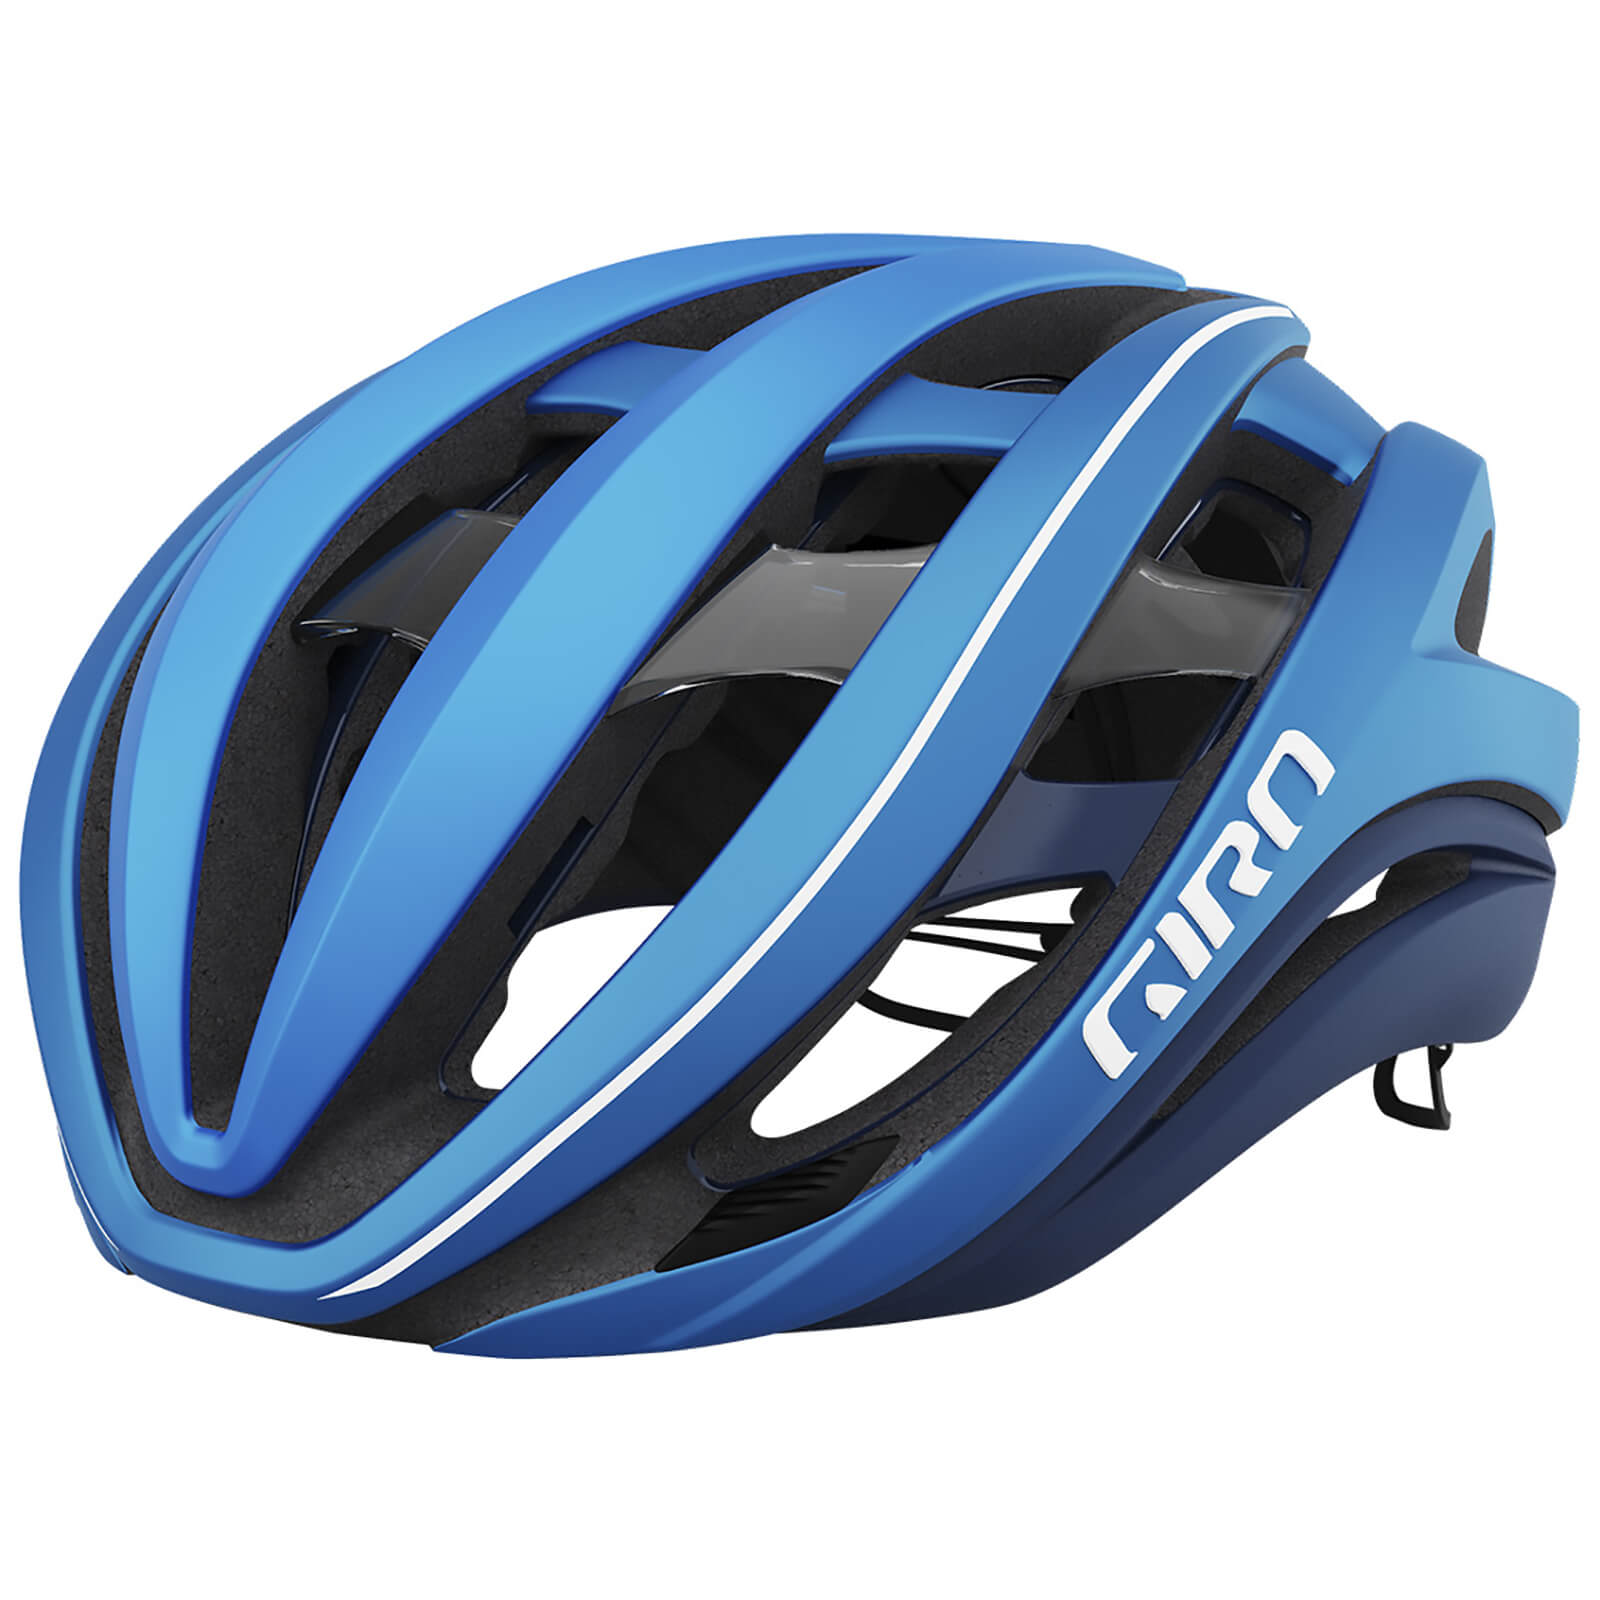 Giro Aether Spherical Helmet - L - Matte Ano Blue